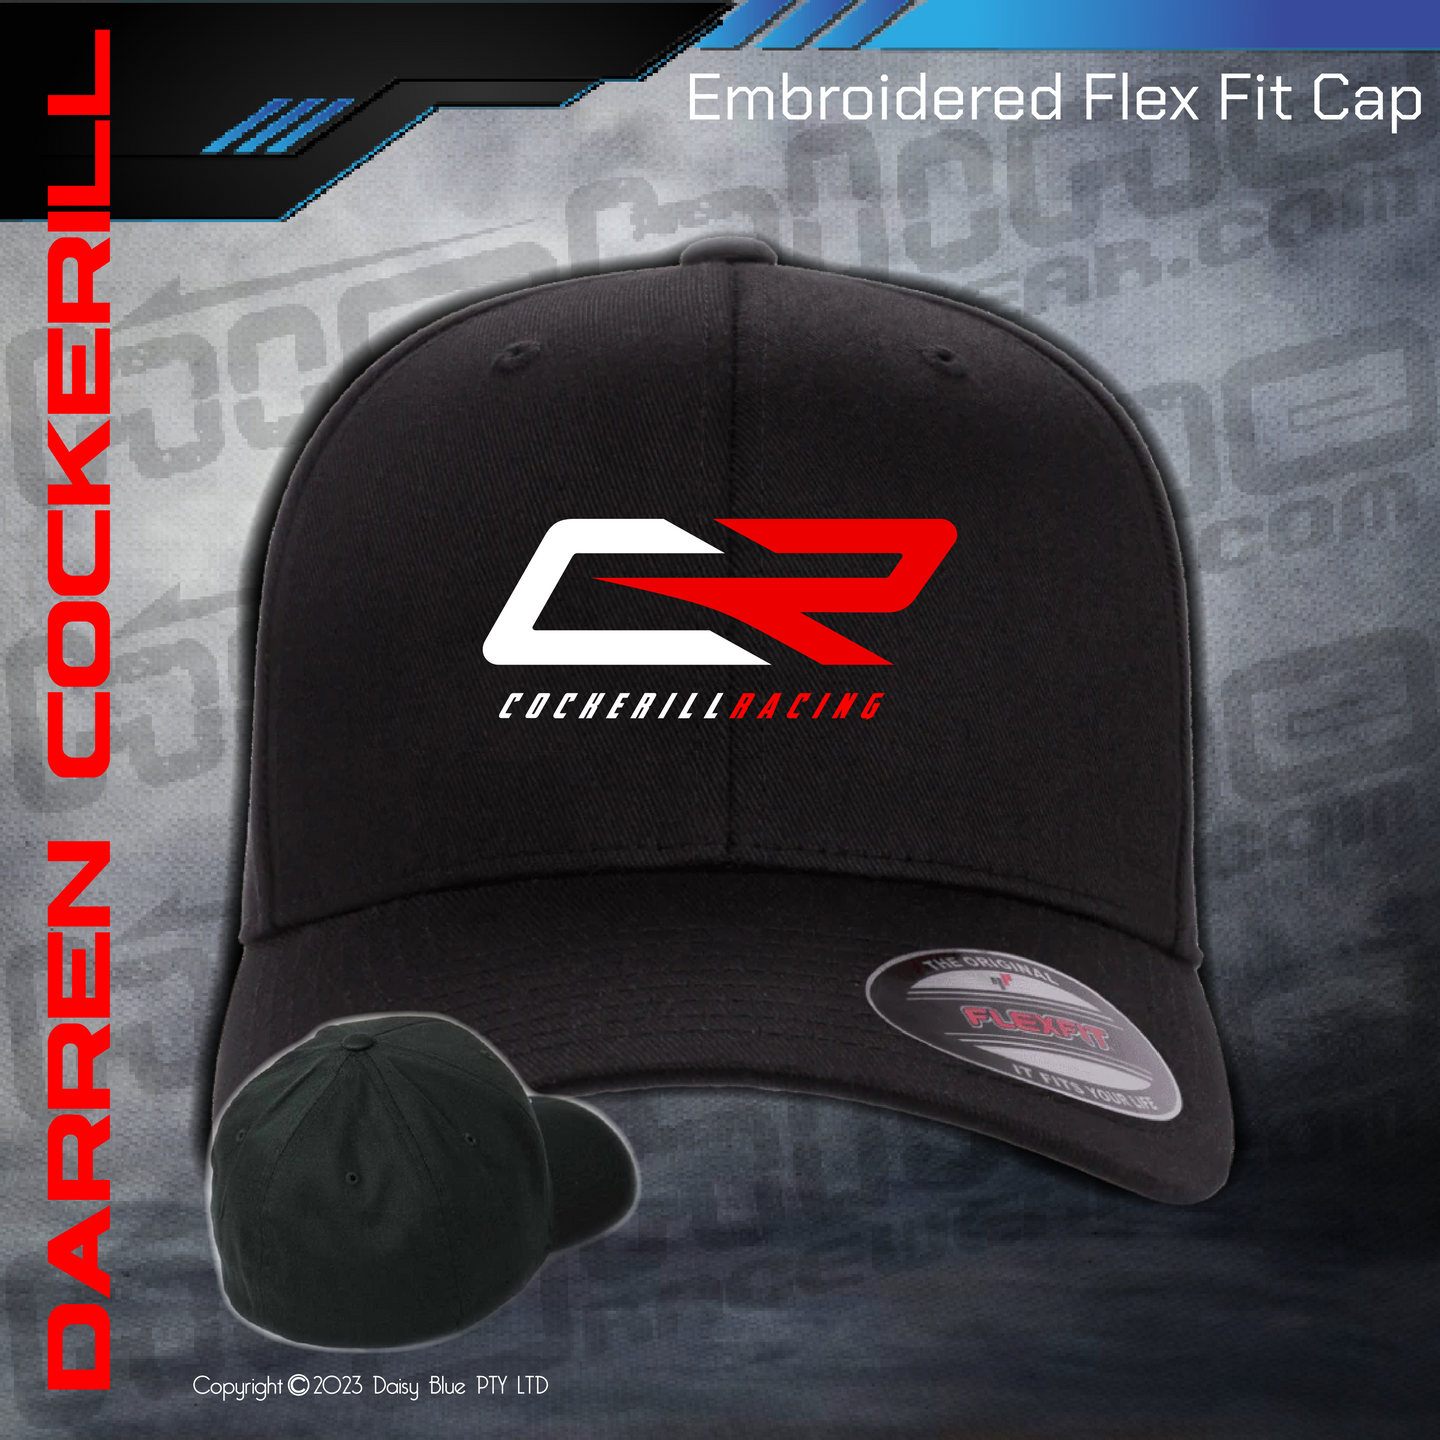 FLEX FIT CAP - Cockerill Racing